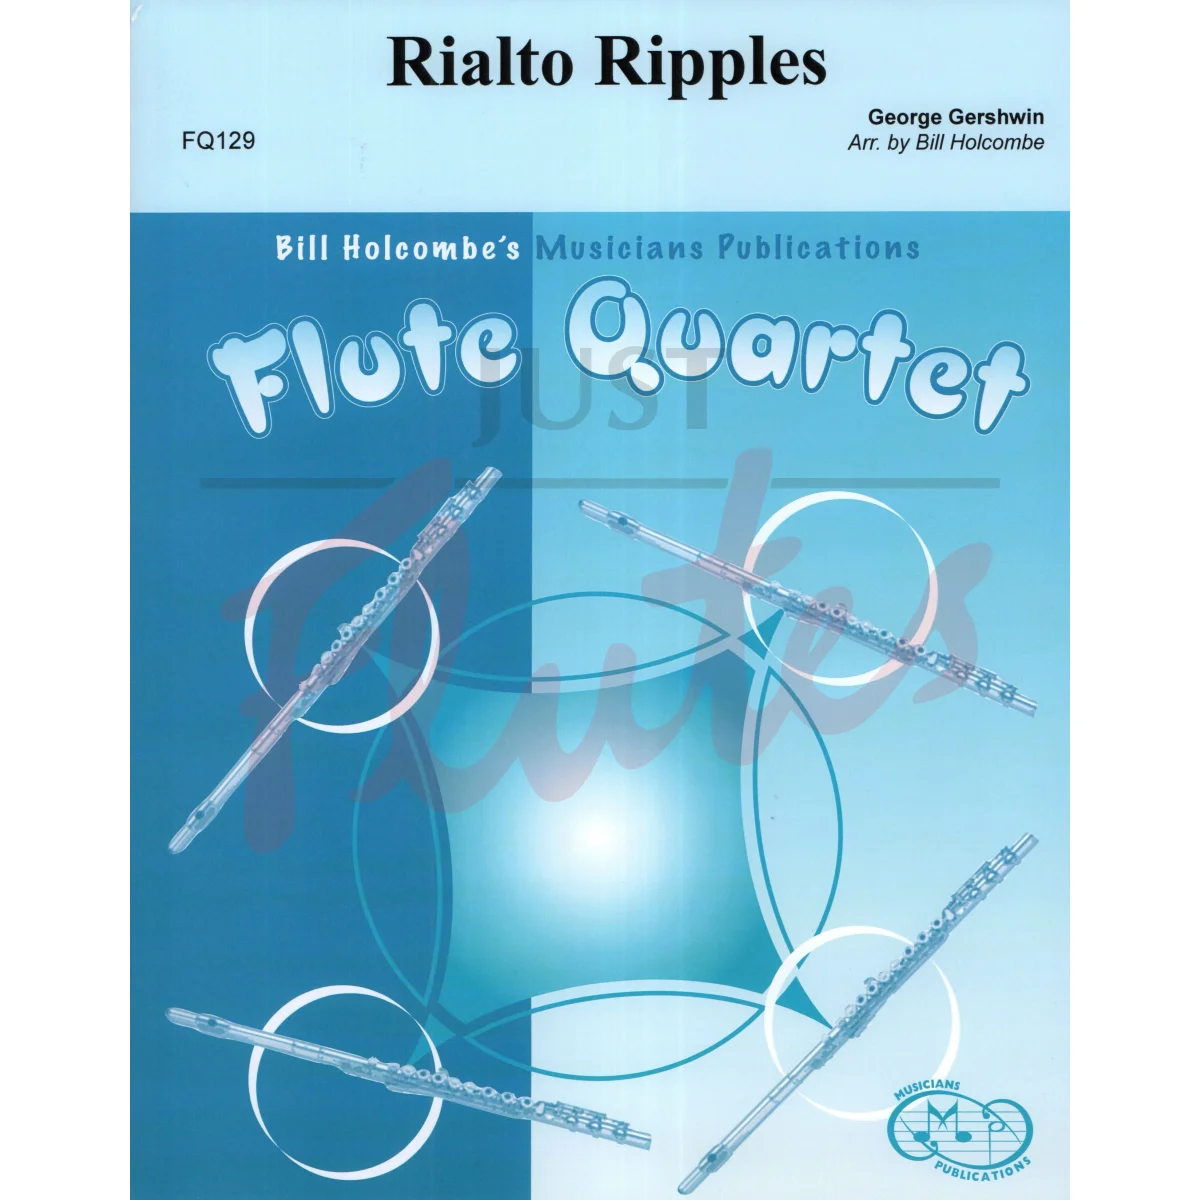 Rialto Ripples for Flute Quartet